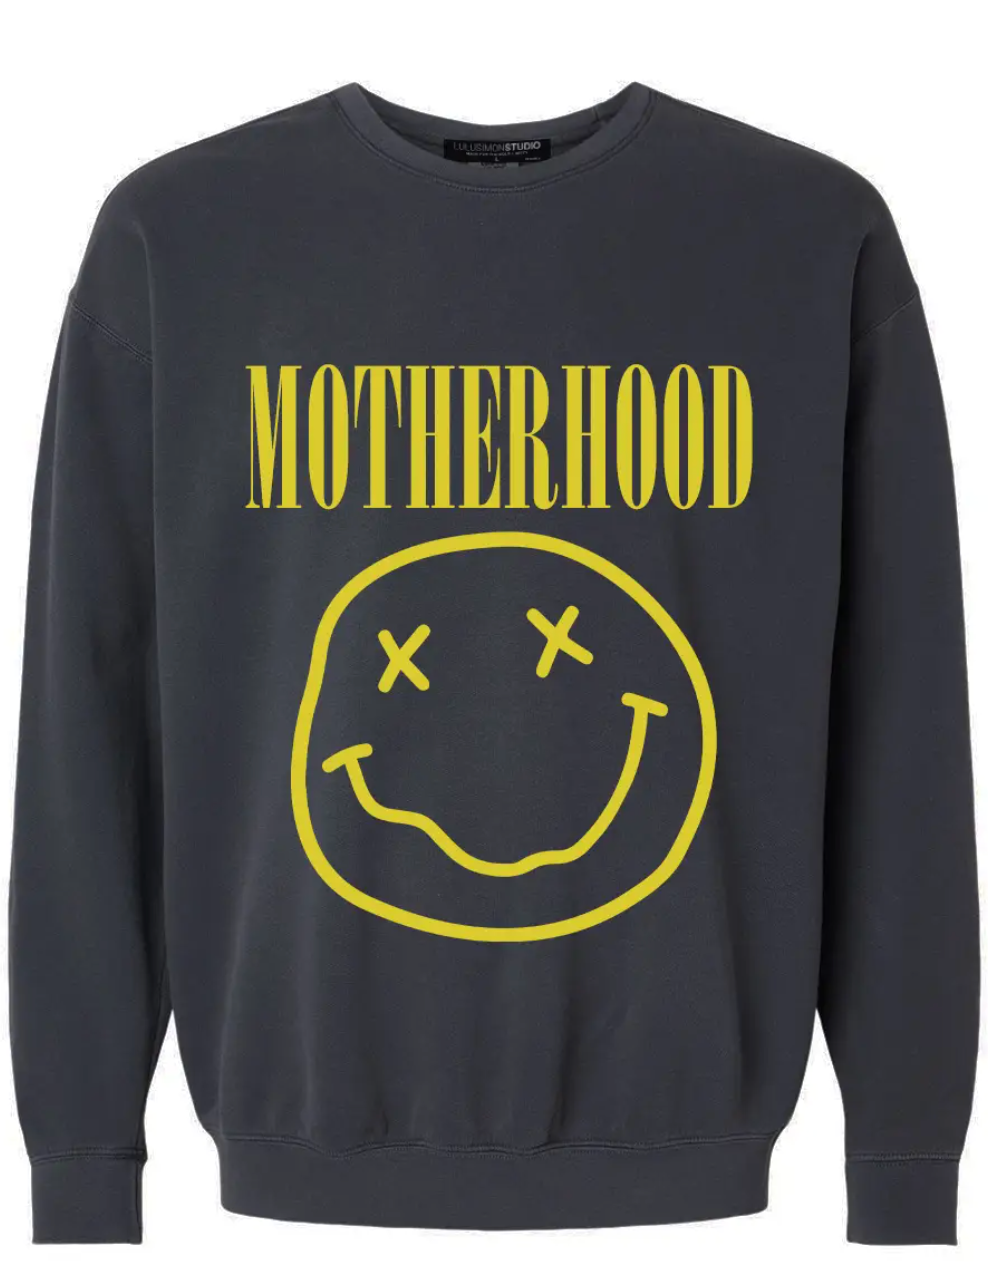 Motherhood Smiley Face Garment Dye Sweatshirt